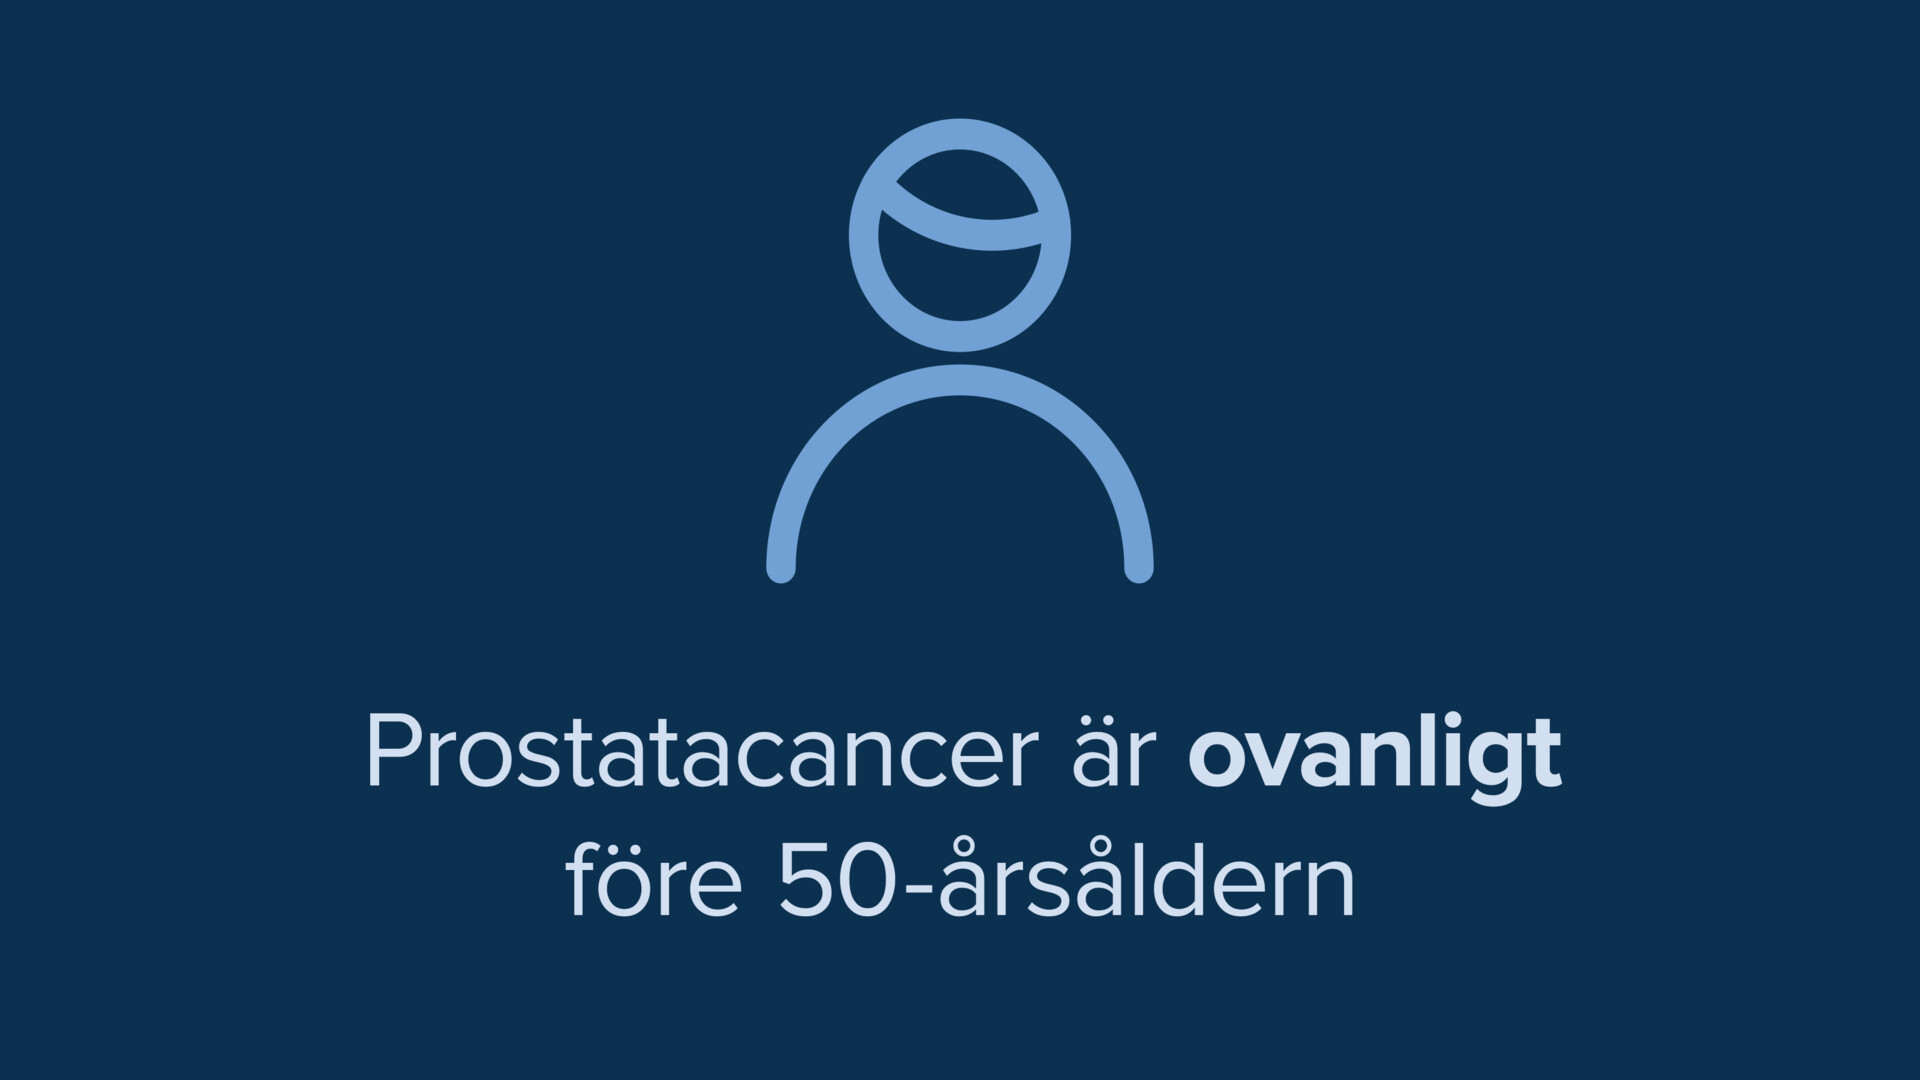 Bild i text: Prostatacancer är ovanligt före 50-årsåldern. 